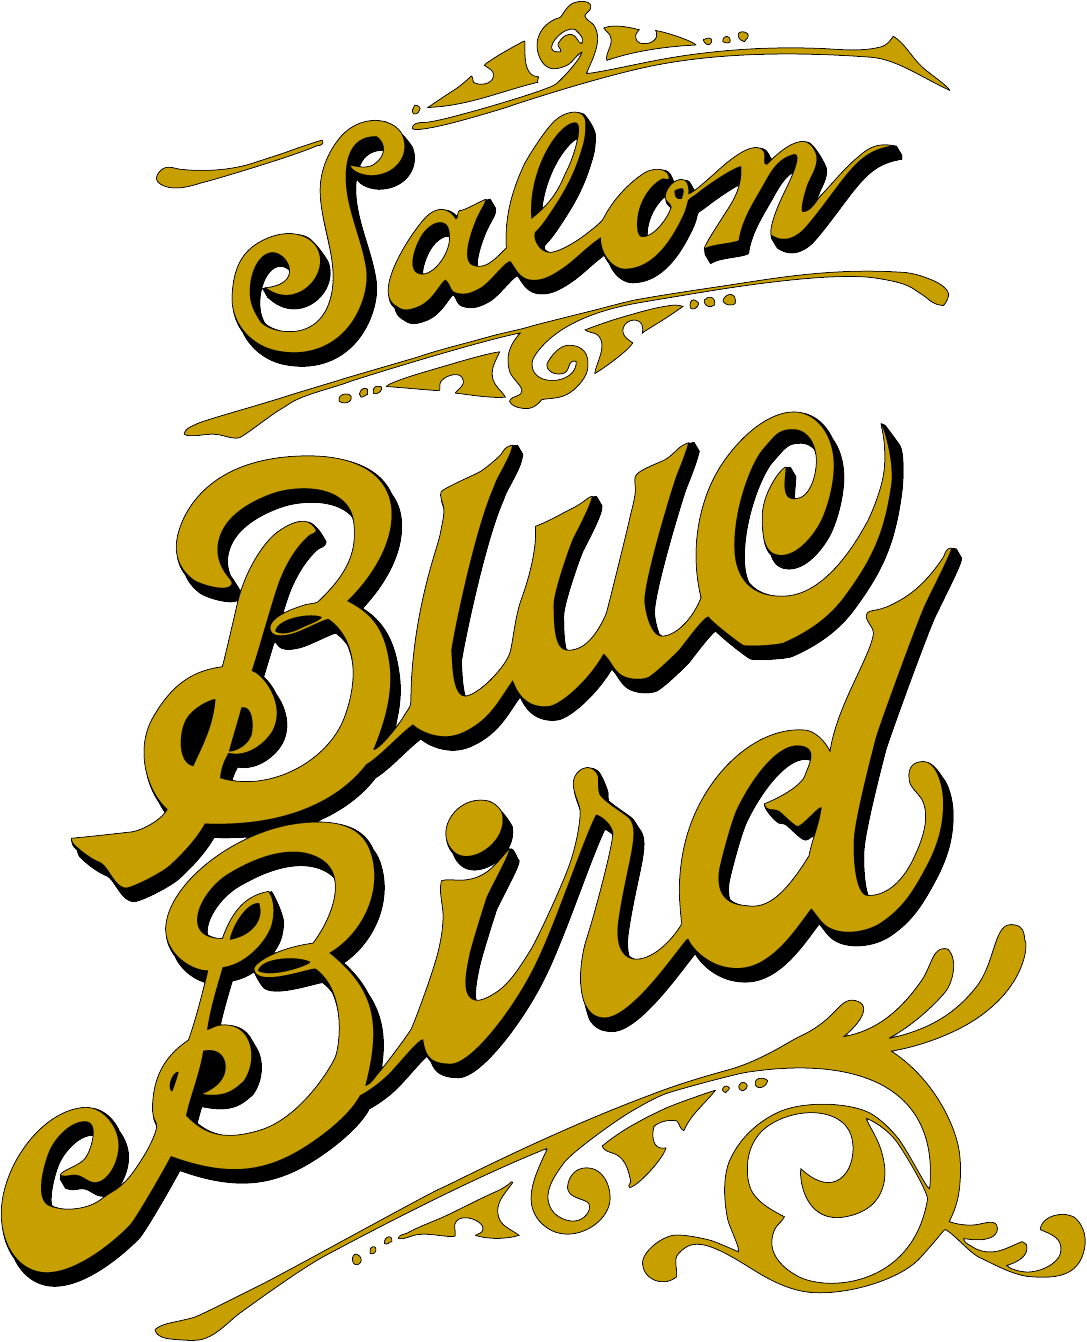 Blue Bird for men